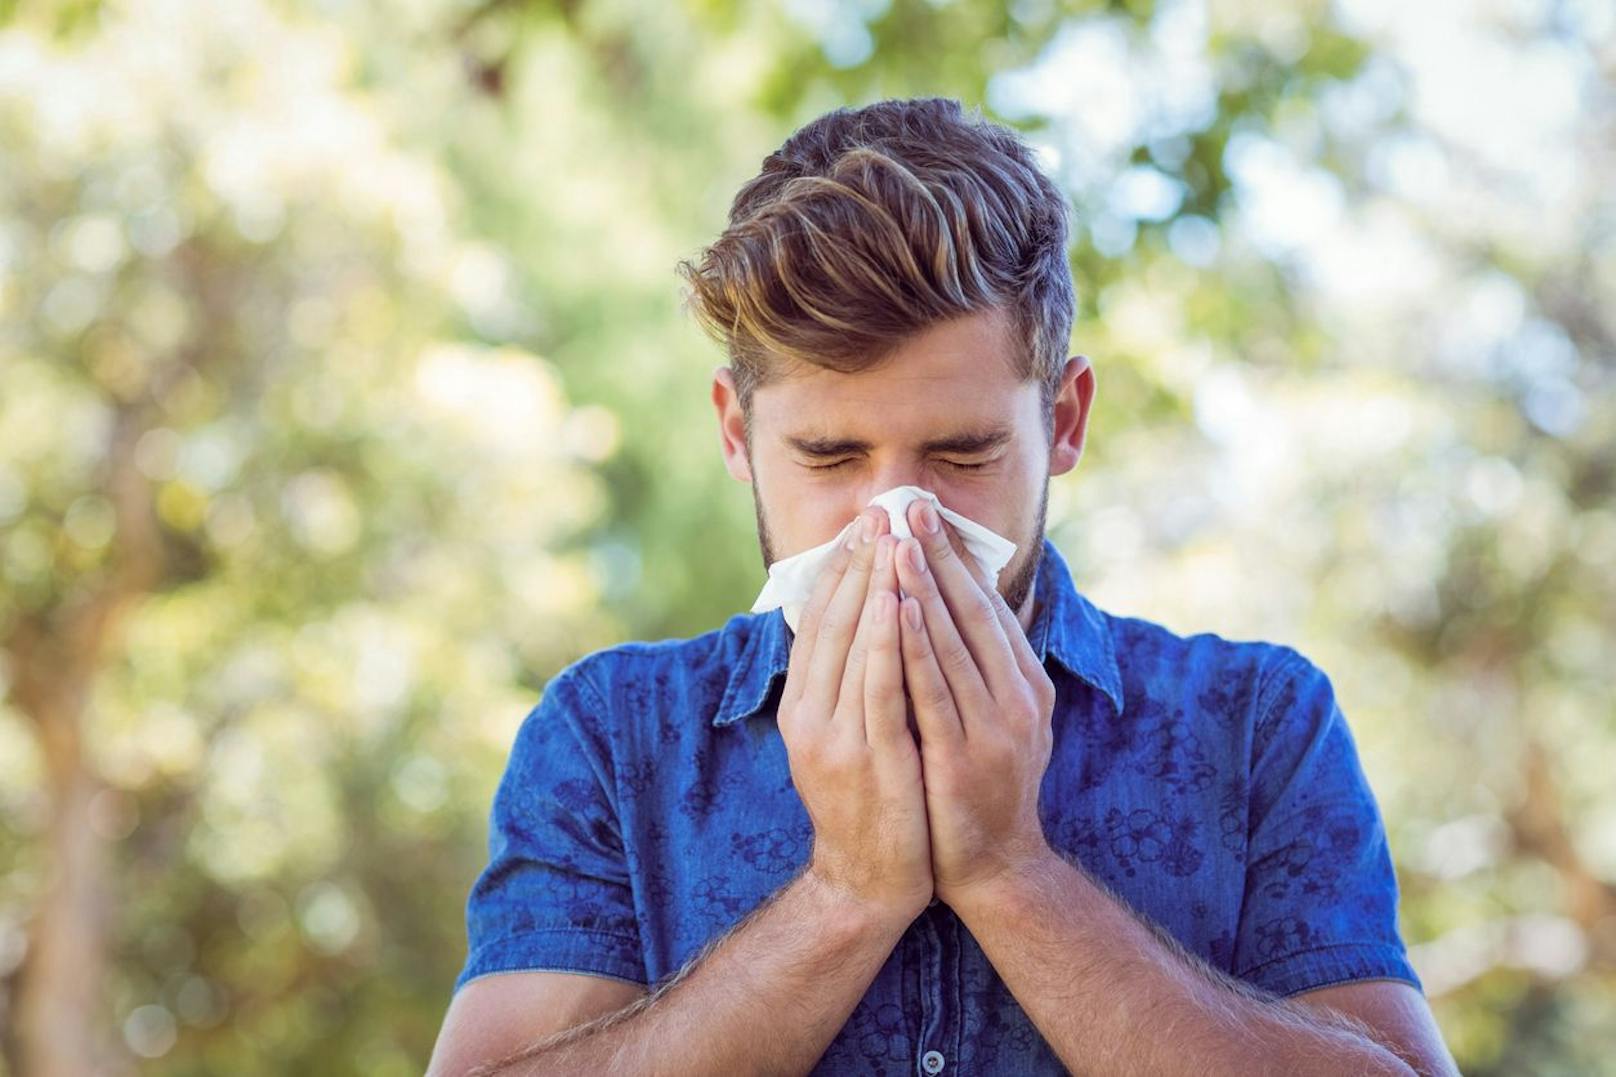 Schnäuzen, oder doch lieber Hochziehen? Viele sind sich nicht sicher, wie man am effektivsten (und am gesündesten) den lästigen Nasenschleim entfernt. Finde heraus, was für und gegen die jeweiligen Methoden spricht. 